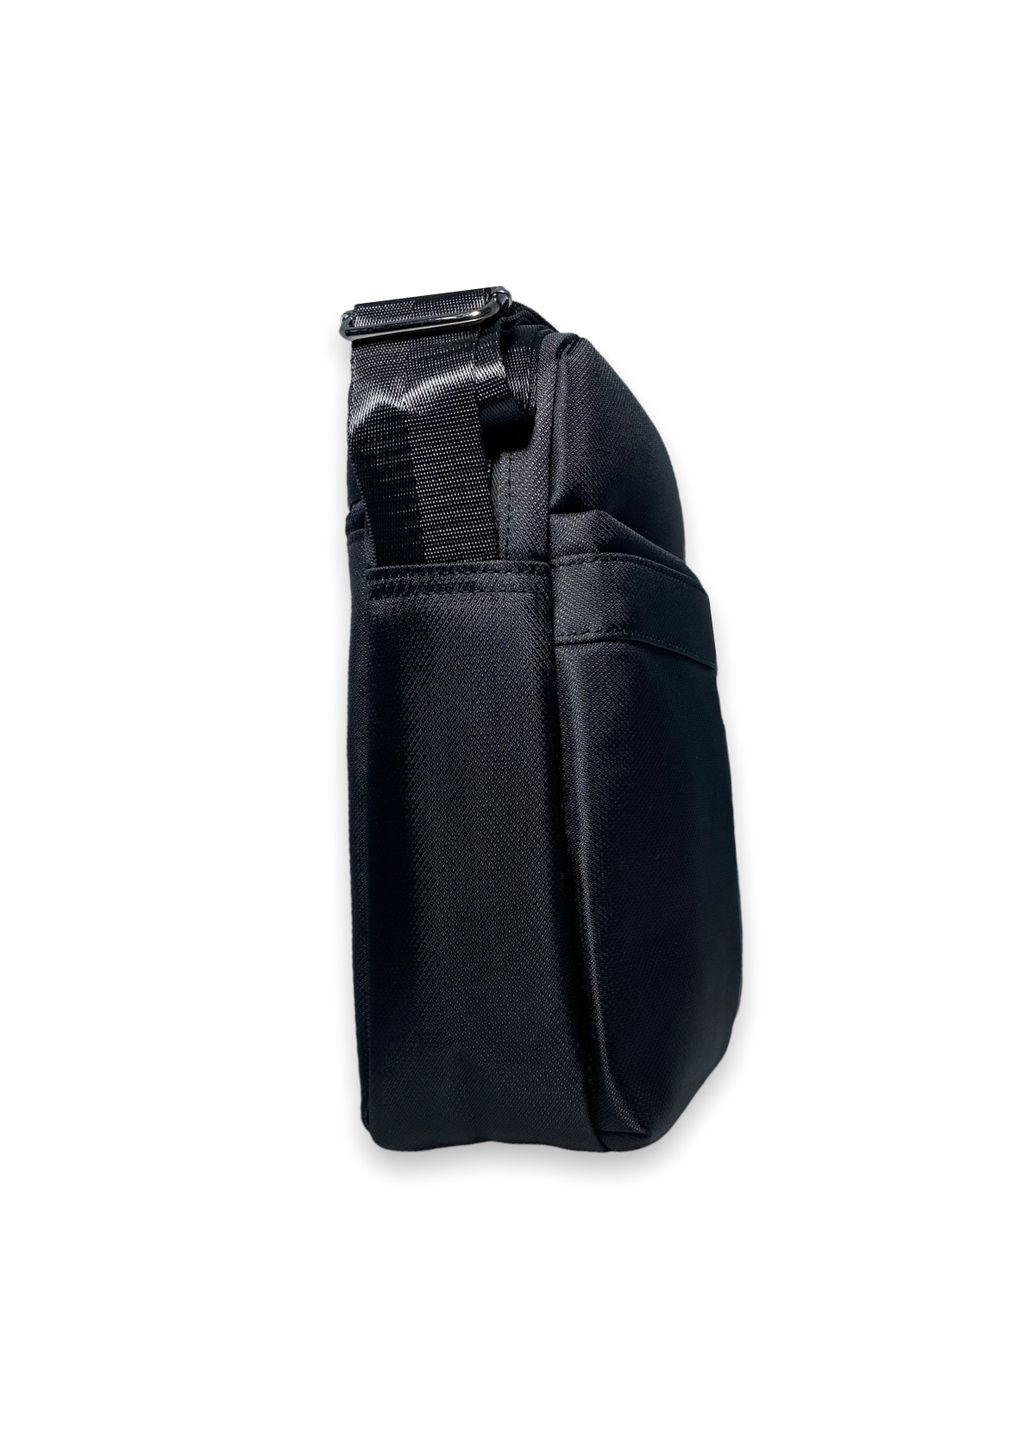 Мужская сумка 232 одно отделение, внутренние карманы ремень ручка размеры: 25*20*7см черная Xiu Xian Bag (285814849)